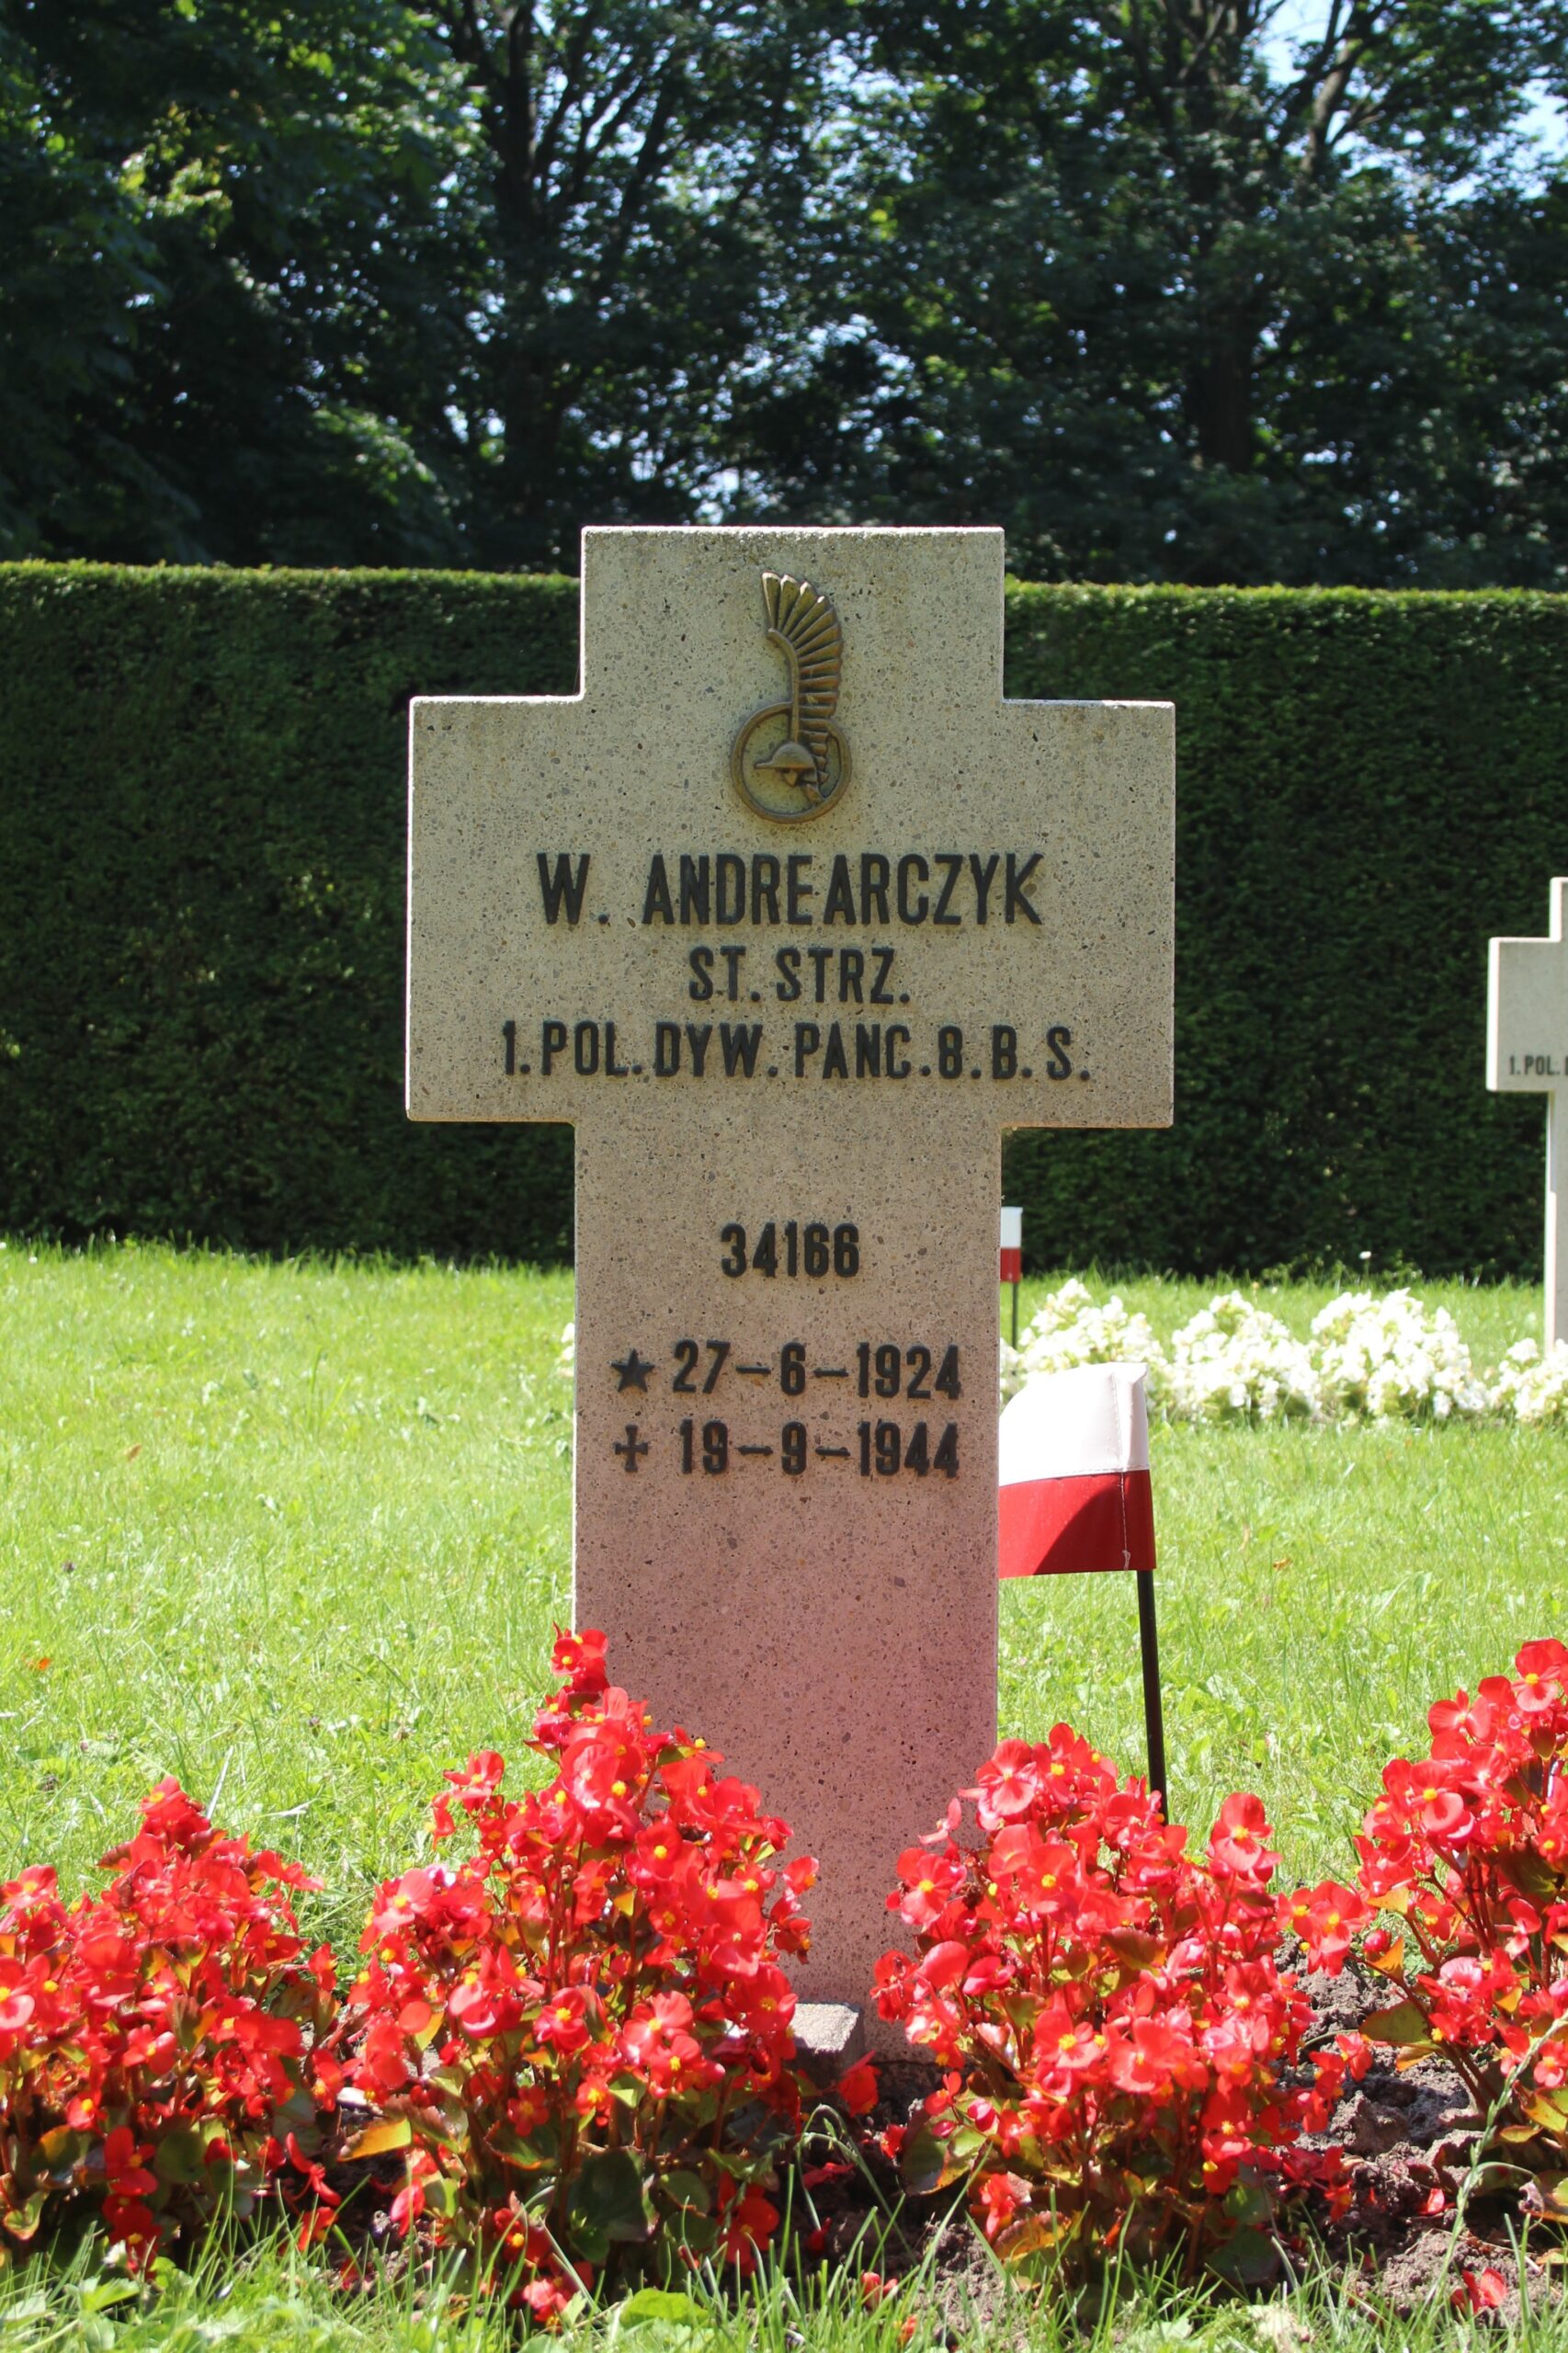 Władysław Andrearczyk